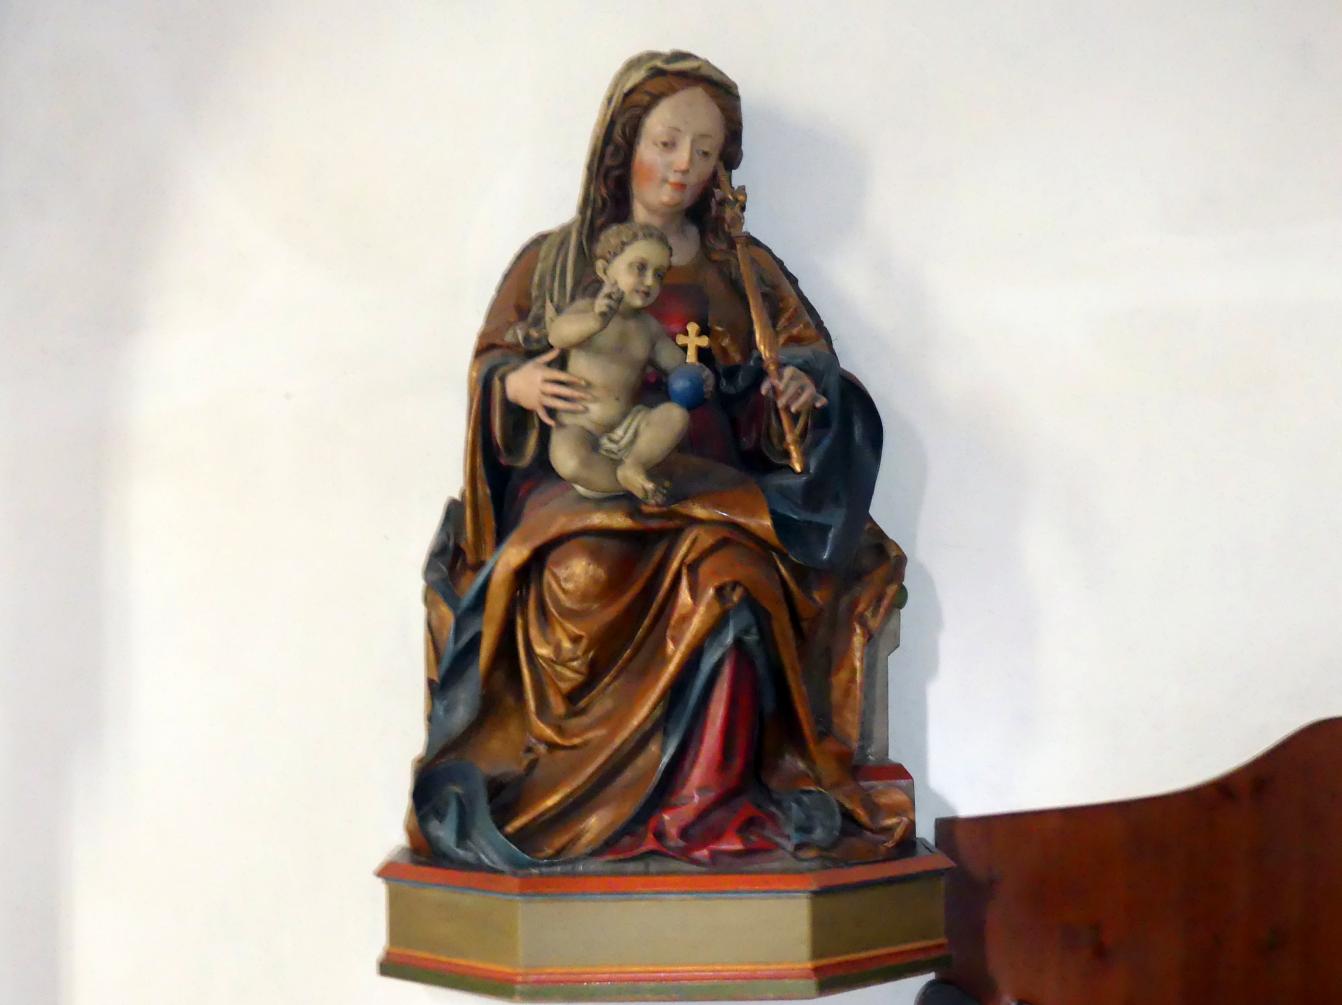 Ruprecht Potsch (1509): Thronende Madonna mit Zepter und Kind, um 1509